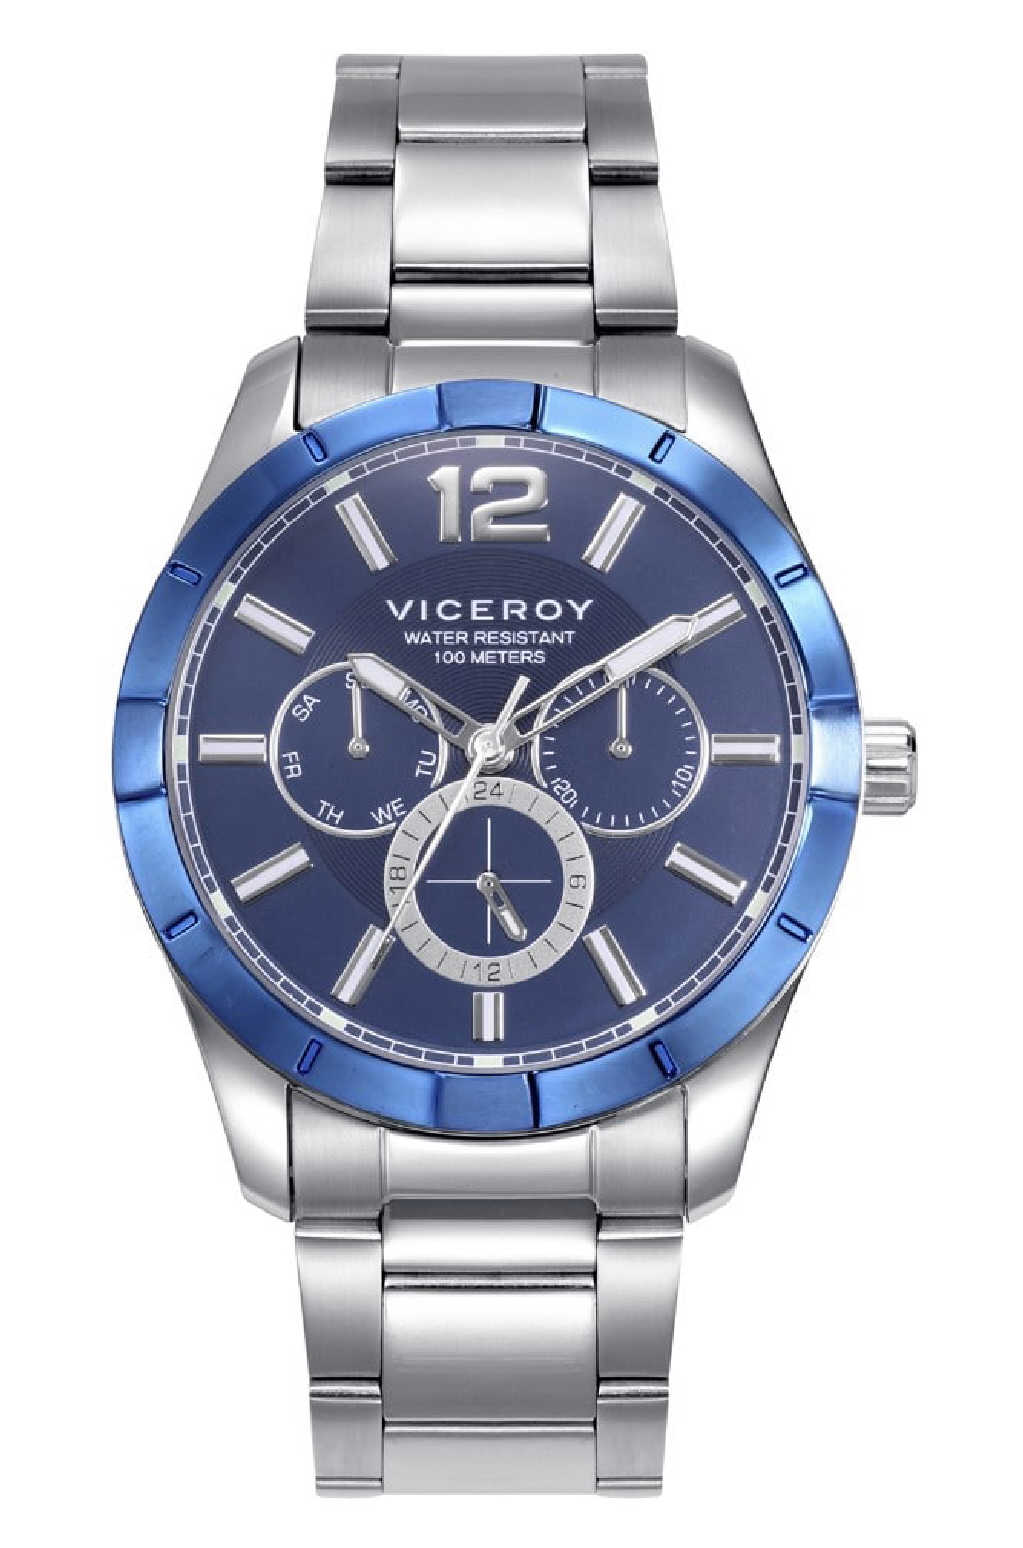 Oferta!! Reloj Viceroy Hombre Multifuncion Azul En Acero 401225-35